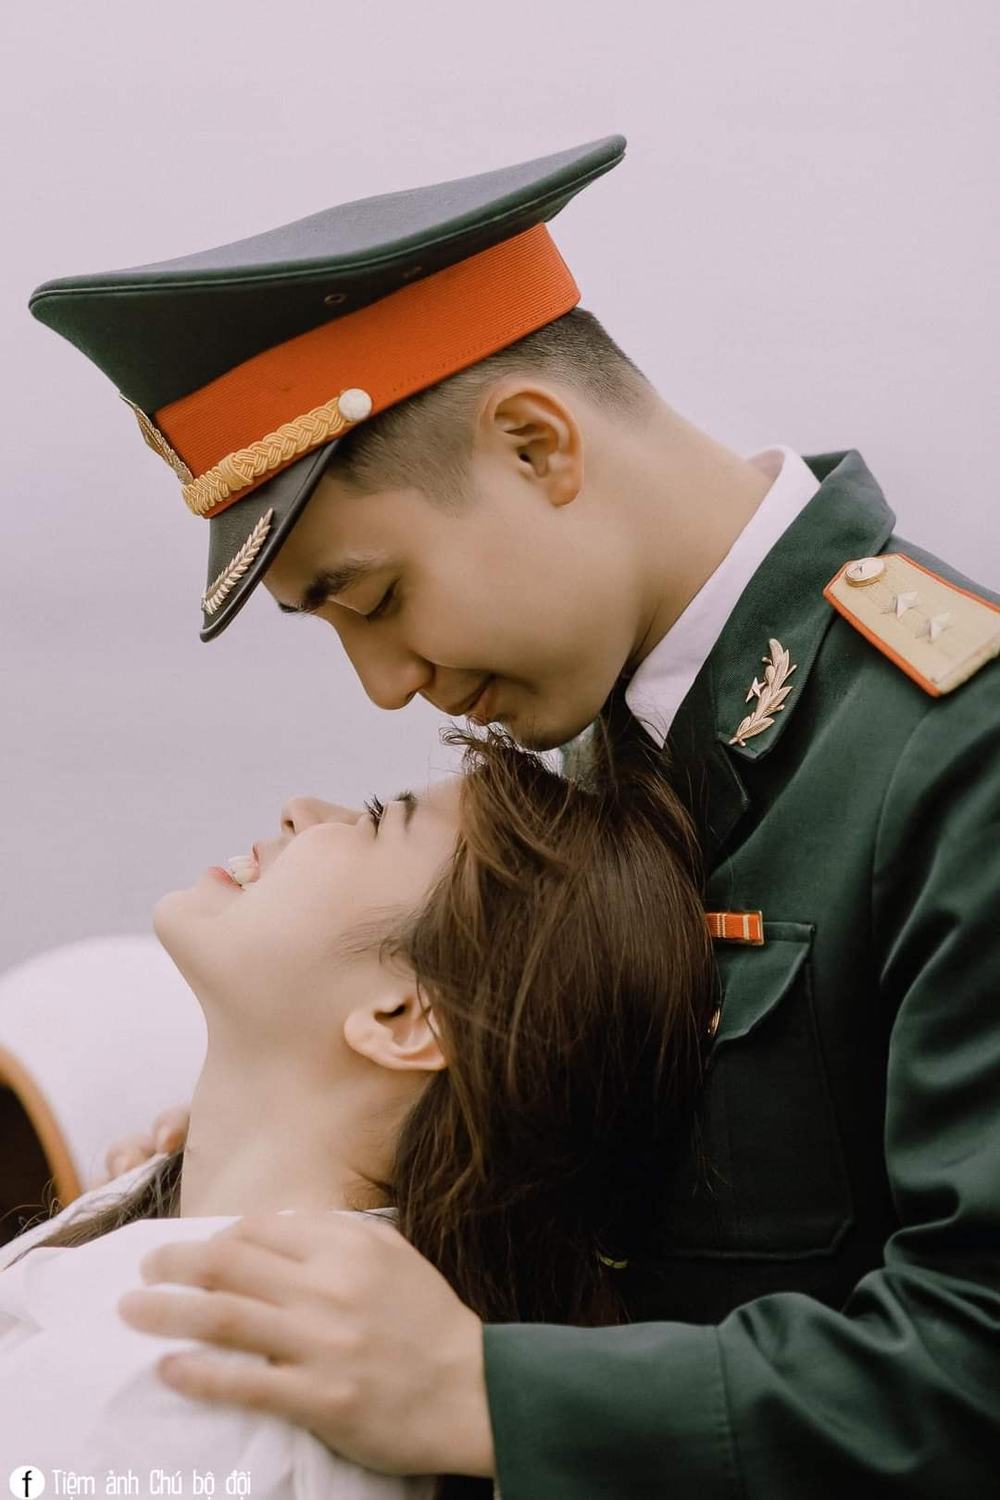 Tâm sự vợ lính: Nếu bạn đang tò mò về câu chuyện tình yêu đầy vất vả giữa một vợ và chồng lính, hãy đến với album hình ảnh tâm sự vợ lính chân thực và đầy xúc động.